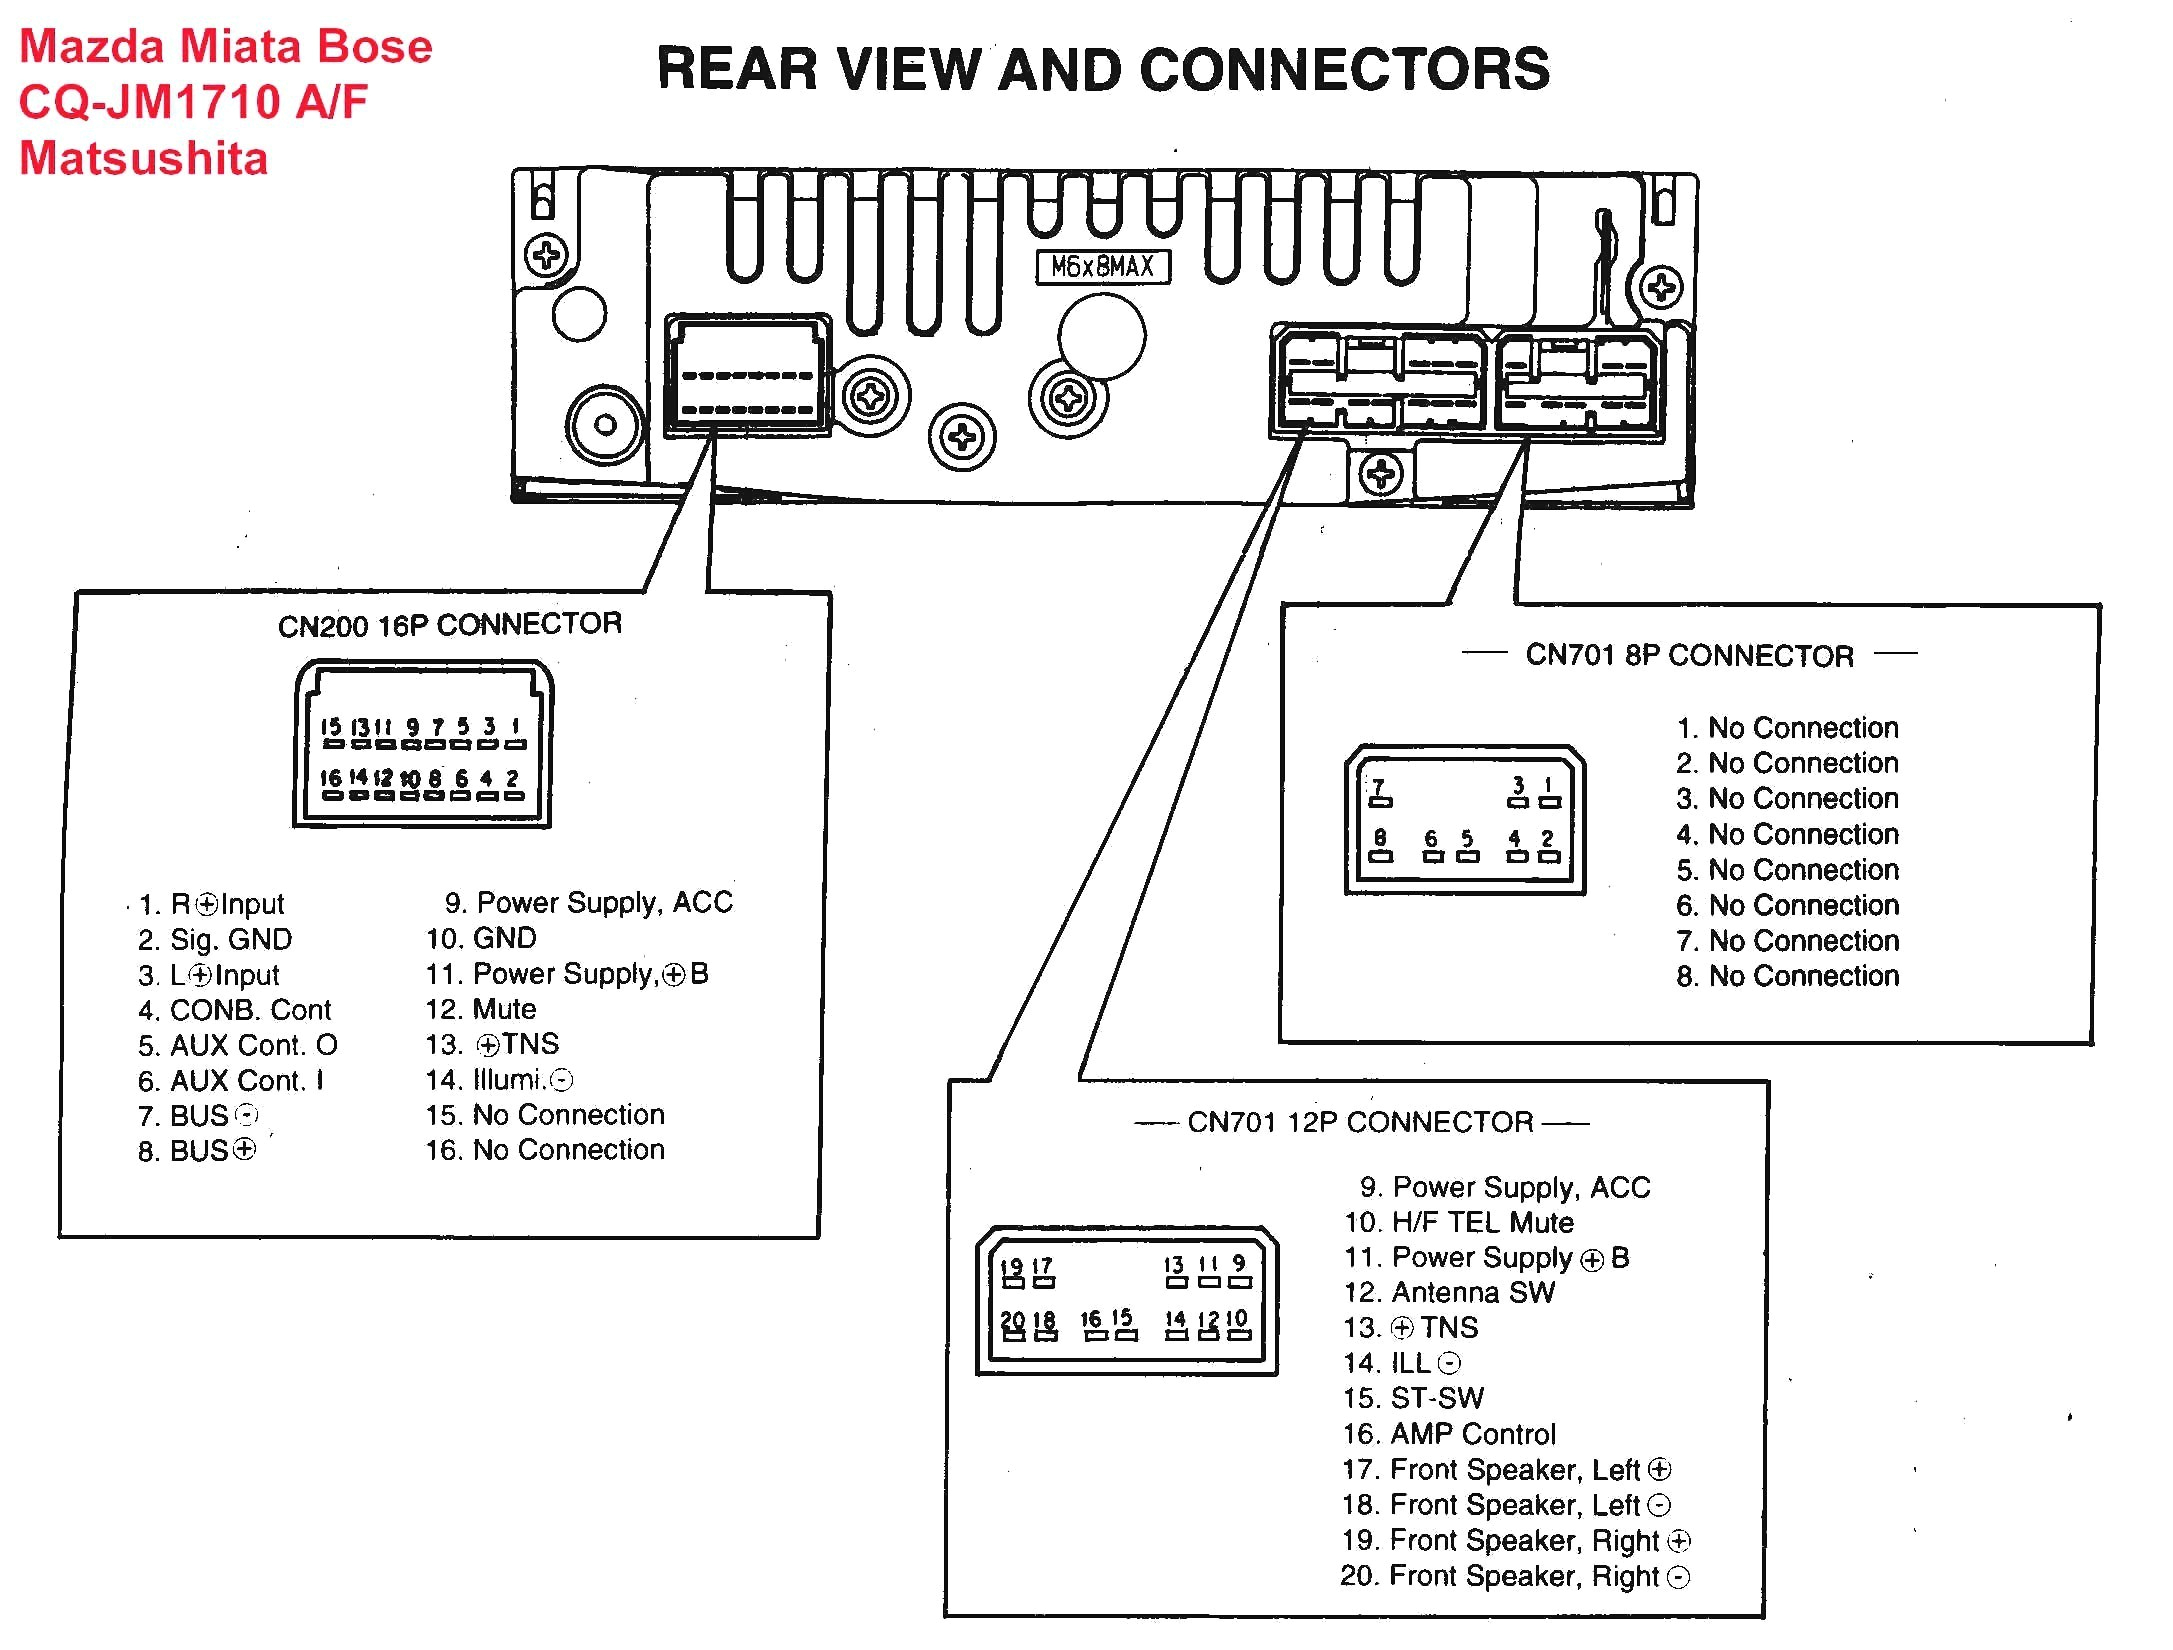 deh p3900mp wiring diagram wiring diagram mega mix deh p3900mp wiring diagram free download wiring diagram